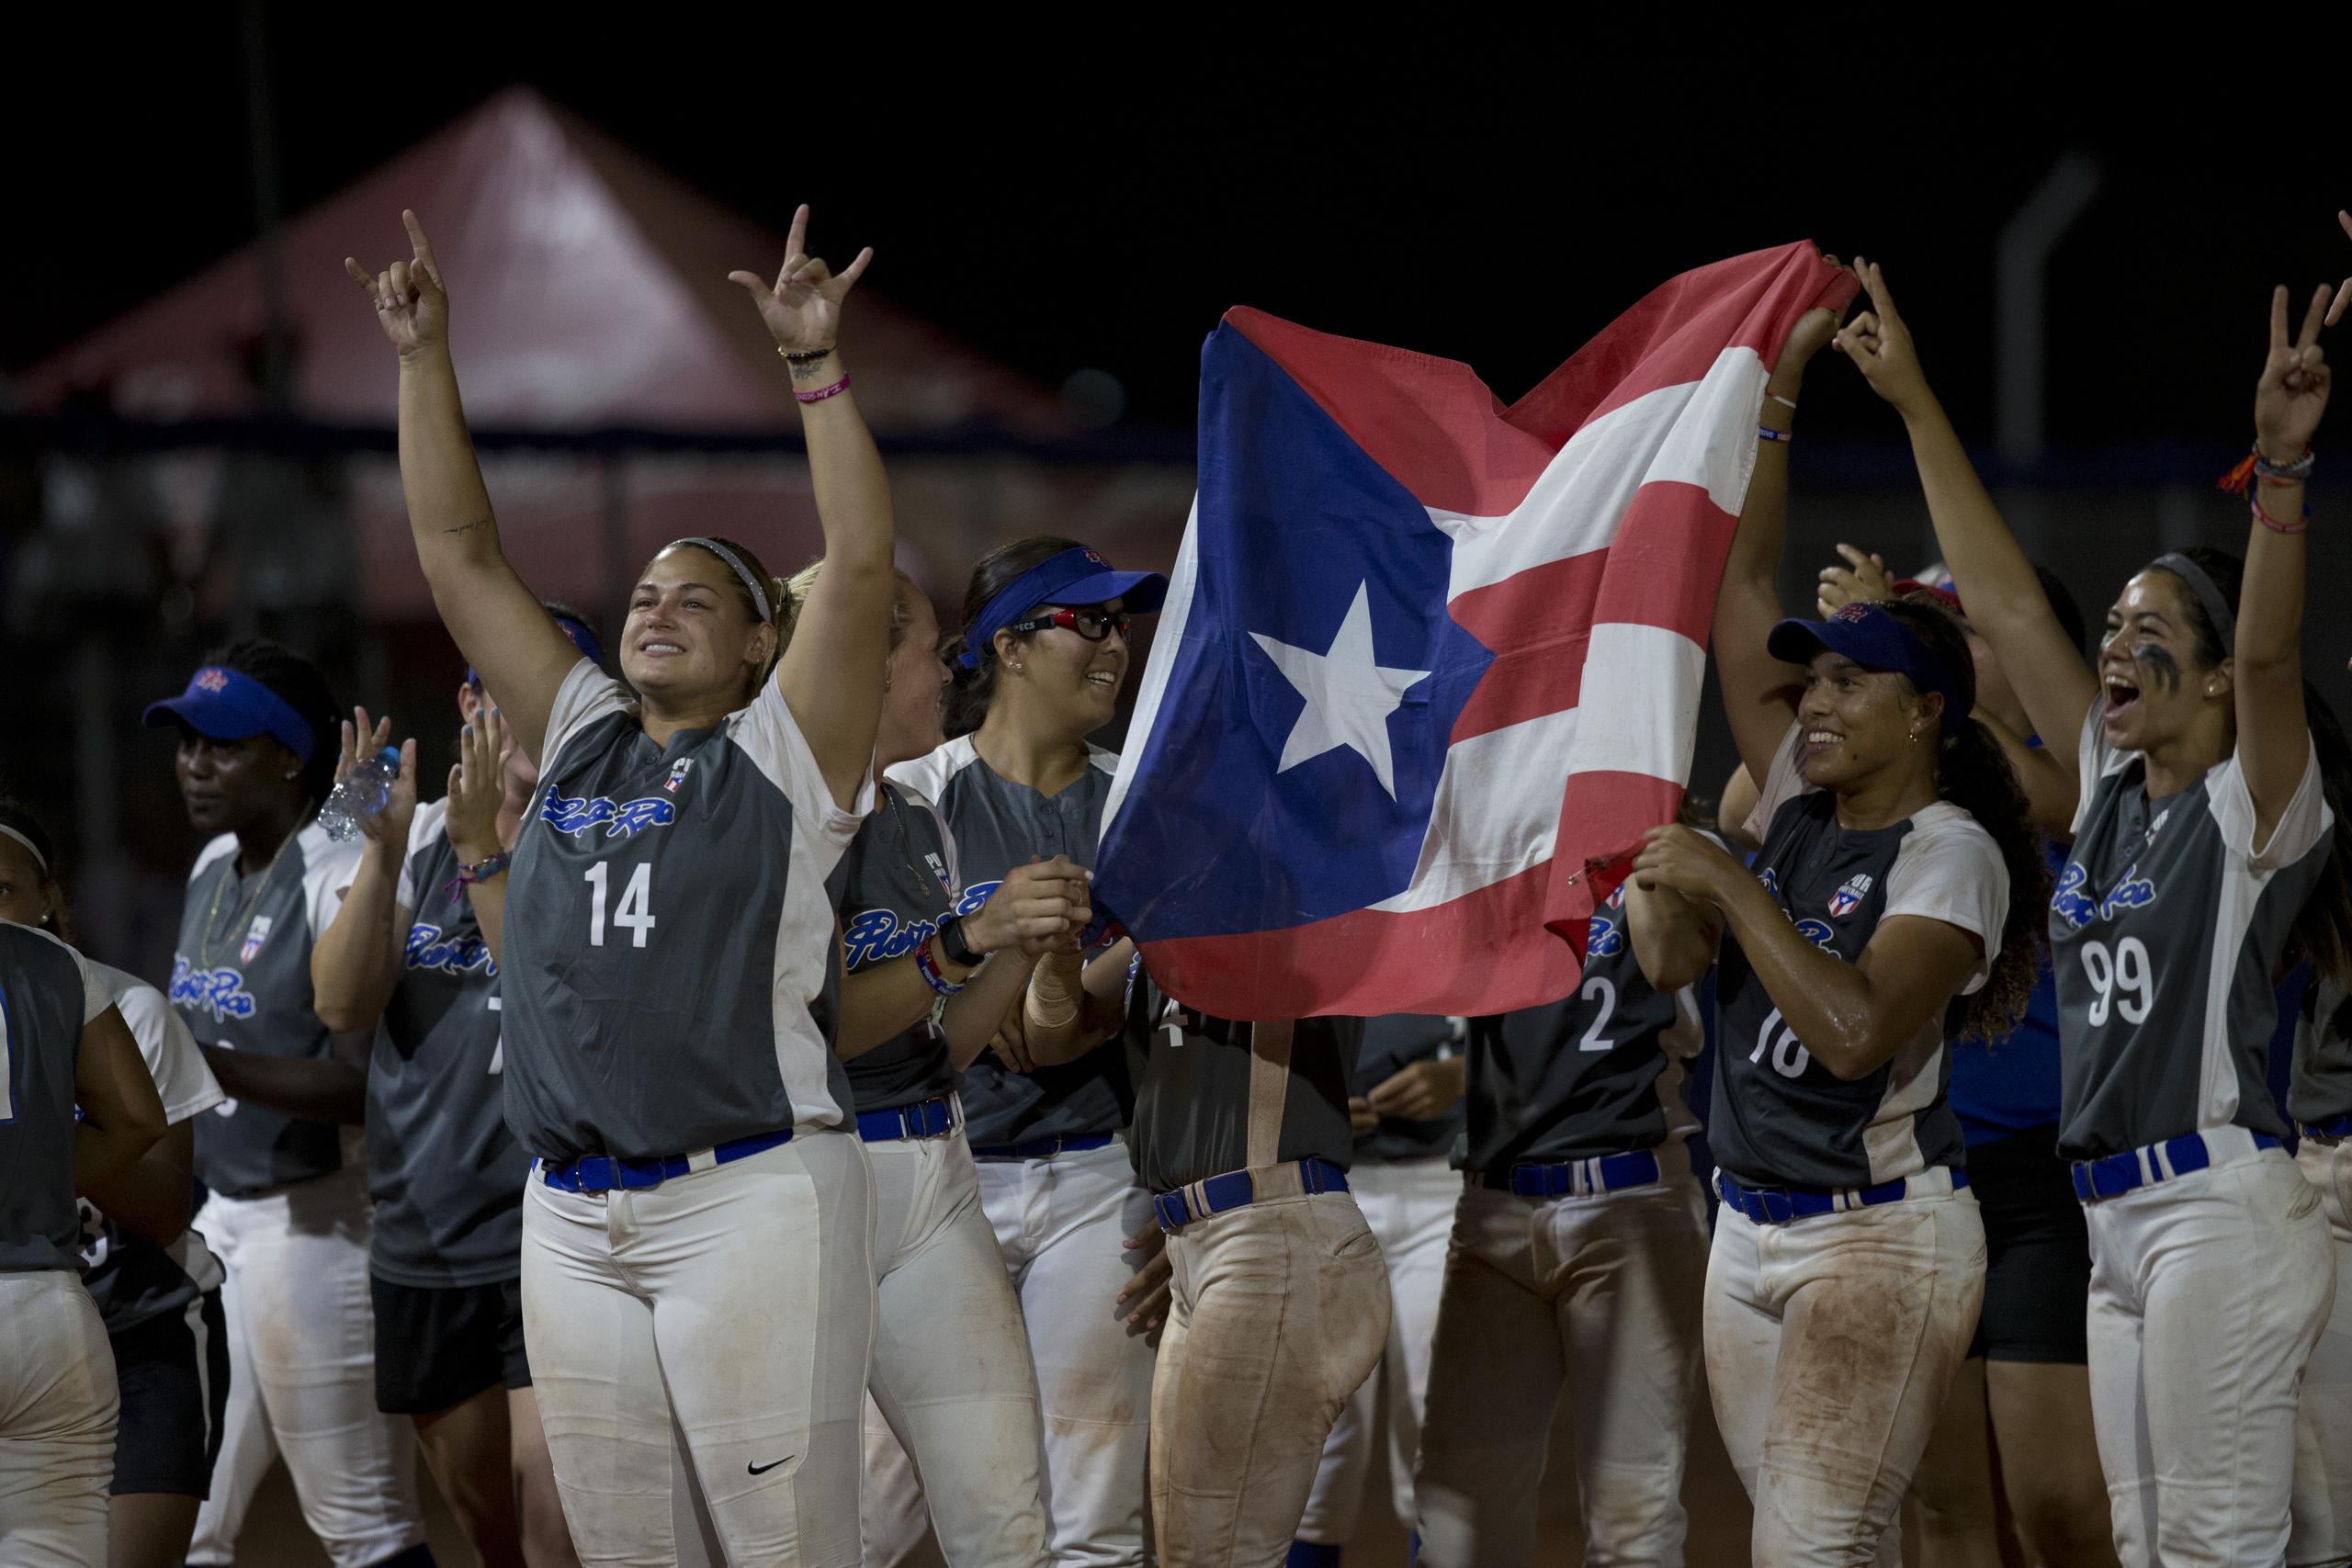 Puerto Rico se coronó campeón en Barranquilla 2018 derrotando en la final, por 4-2, a México.